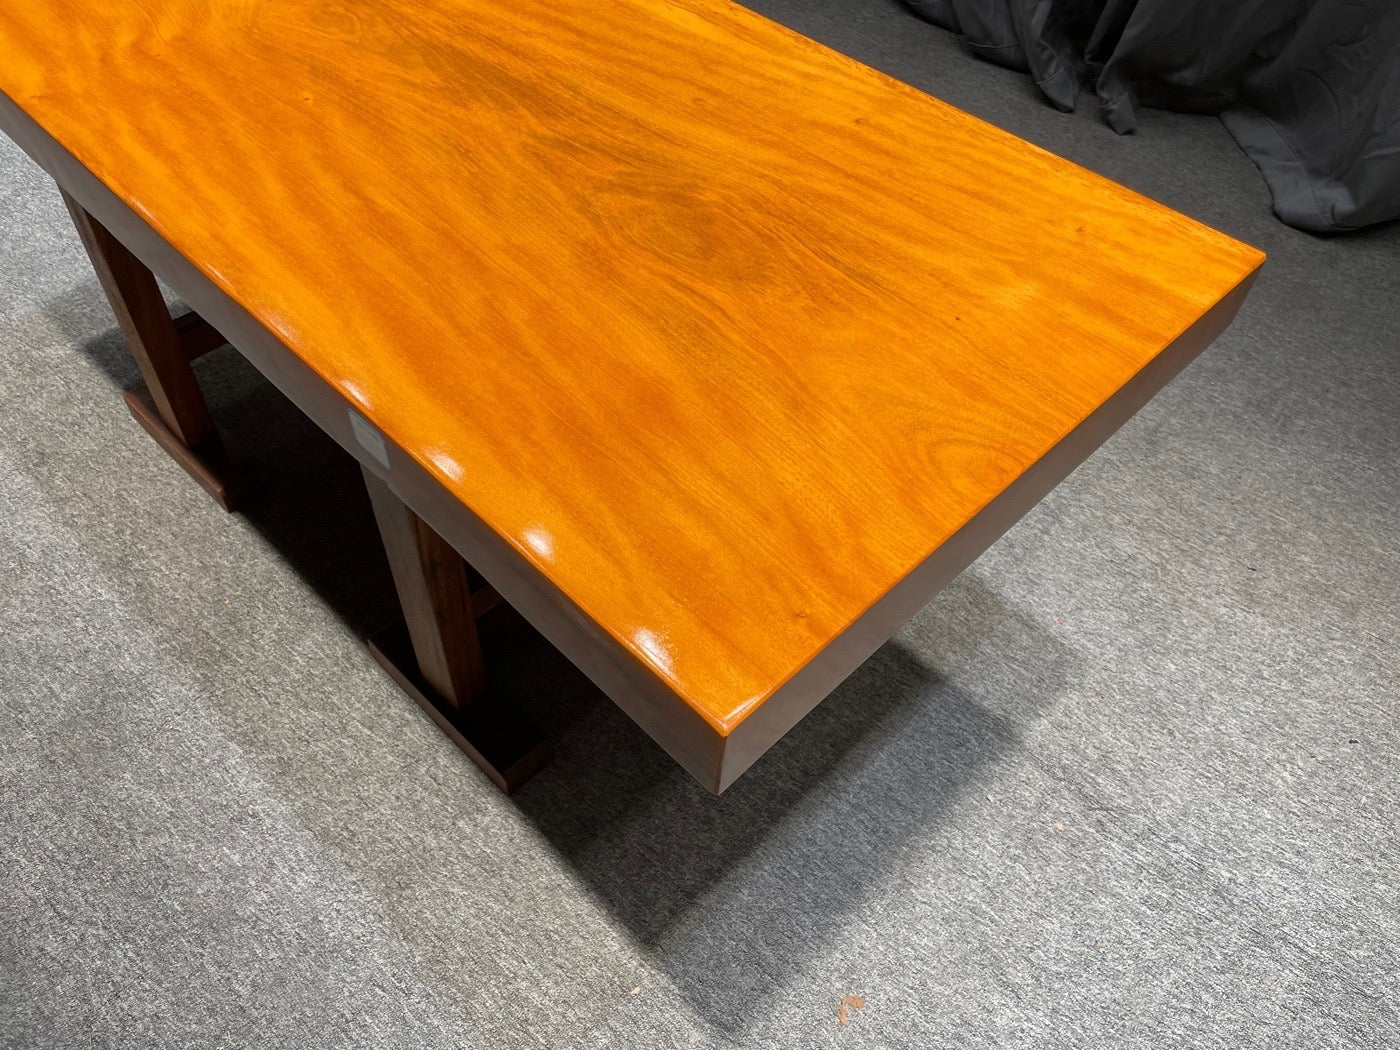 Chiviri Holz, Ris Plack Table, Plack Table Hardware